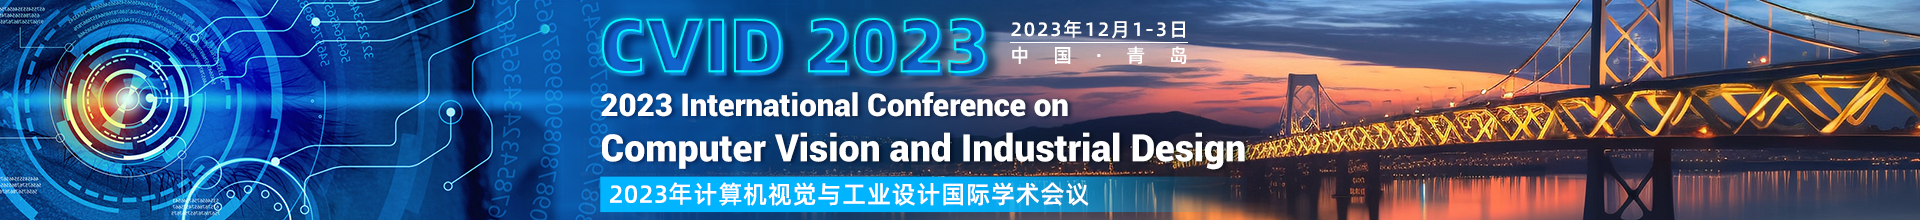 CVID 2023-学术会议云PC端（上线平台）-陈嘉妍-20230626.png